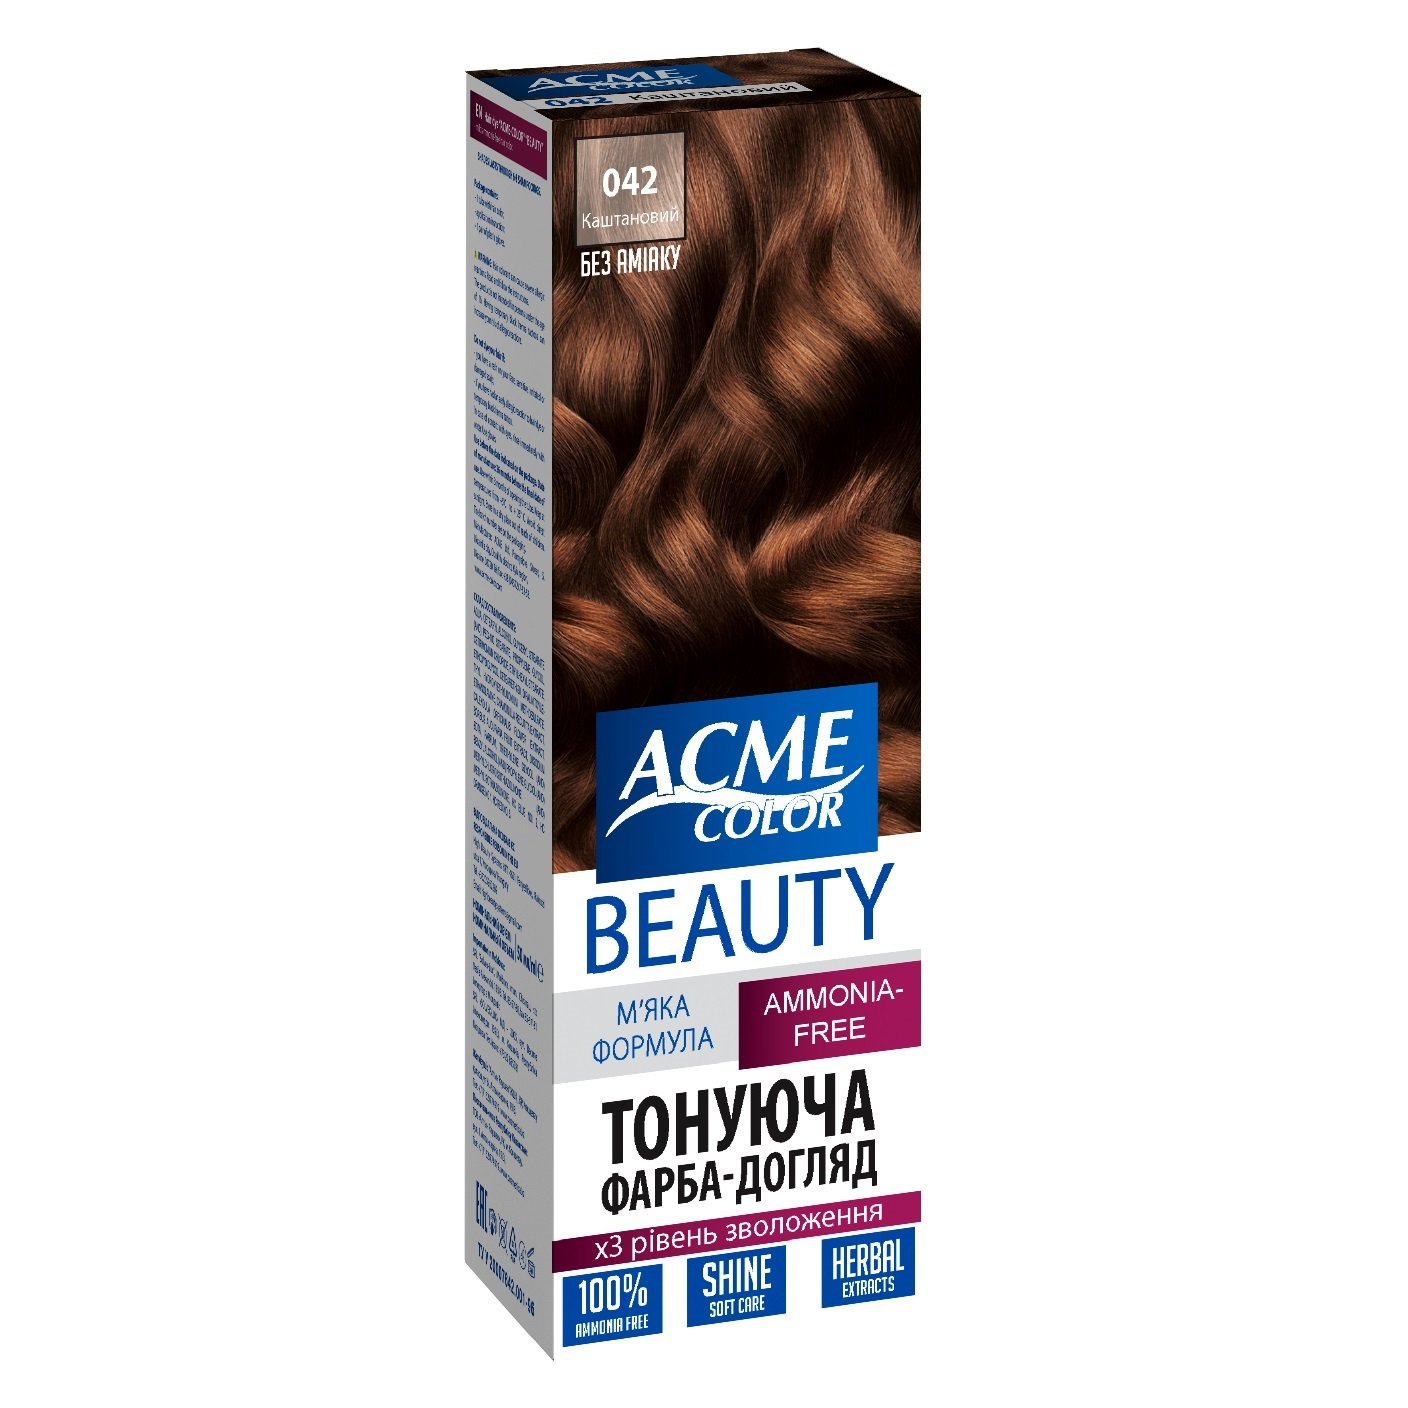 Гель-краска для волос Acme-color Beauty, оттенок 042 (Каштановый), 69 г - фото 1